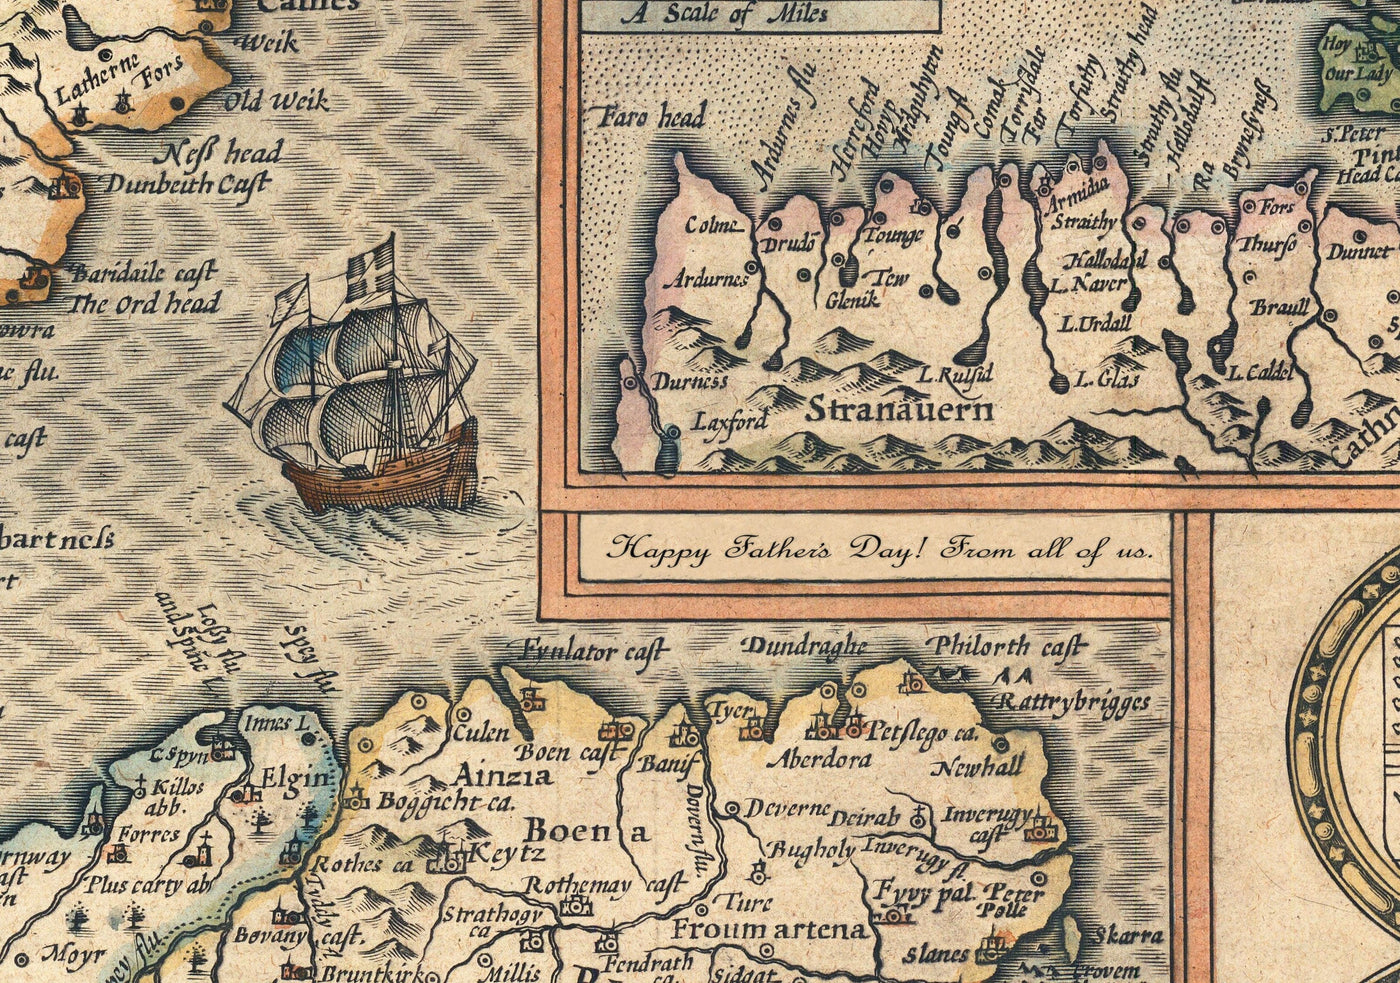 Alte Karte der Britischen Inseln im Jahr 1611 von John Speed - UK, England, Schottland, Wales, Irland